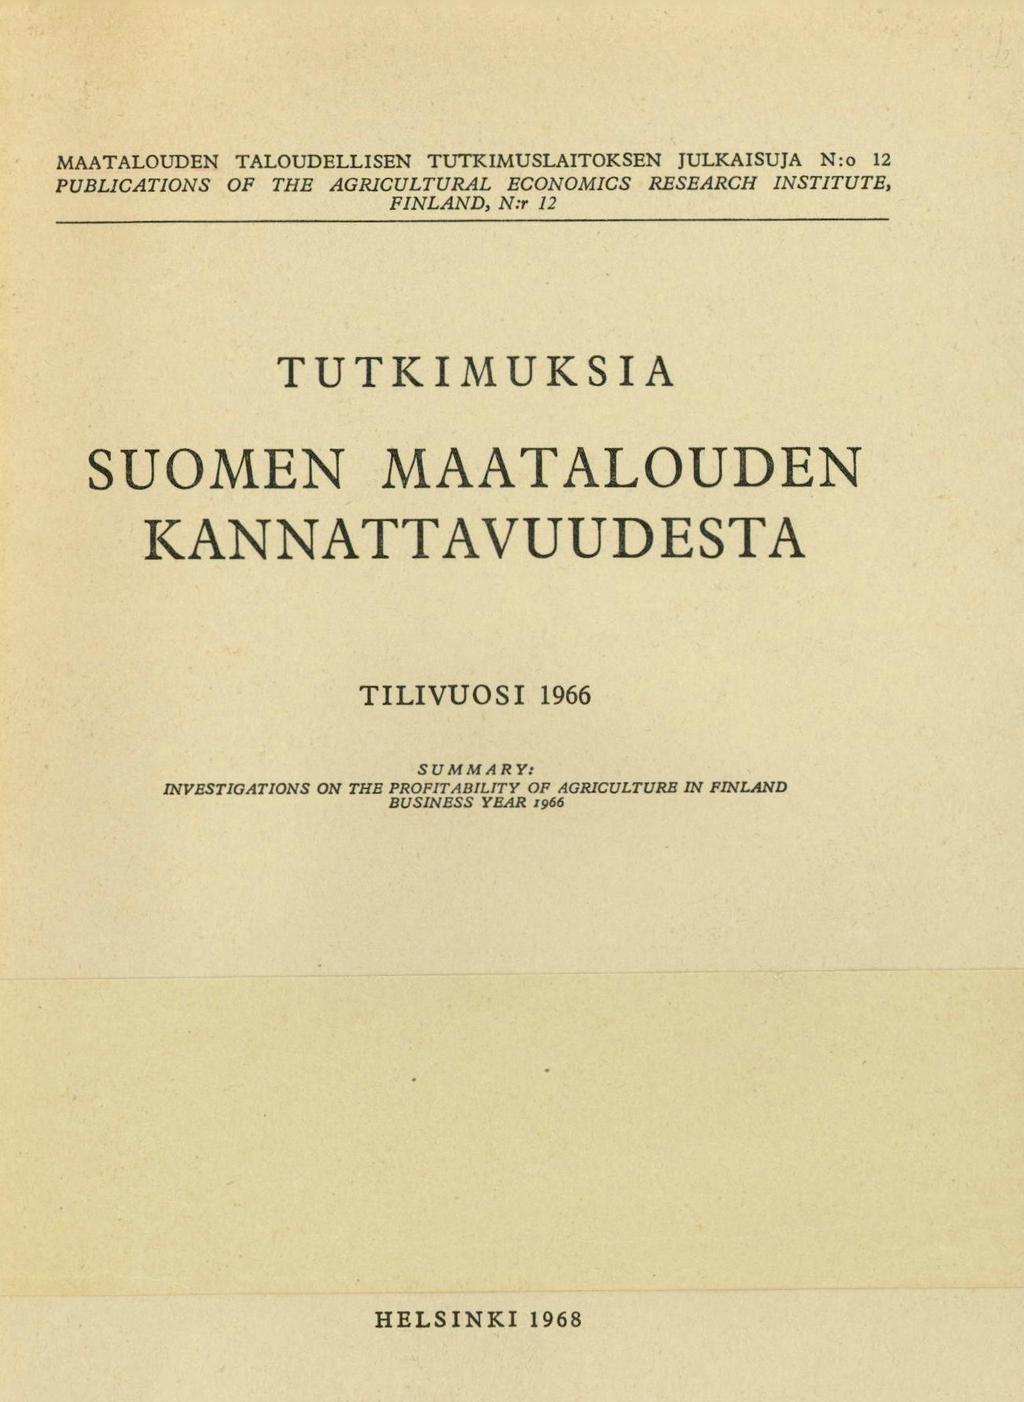 MAATALOUDEN TALOUDELLISEN TUTKIMUSLAITOKSEN JULKAISUJA N:o 12 PUBLICATIONS OF THE AGRICULTURAL ECONOMICS RESEARCH INSTITUTE, FINLAND, N:r 12 TUTKIMUKSIA